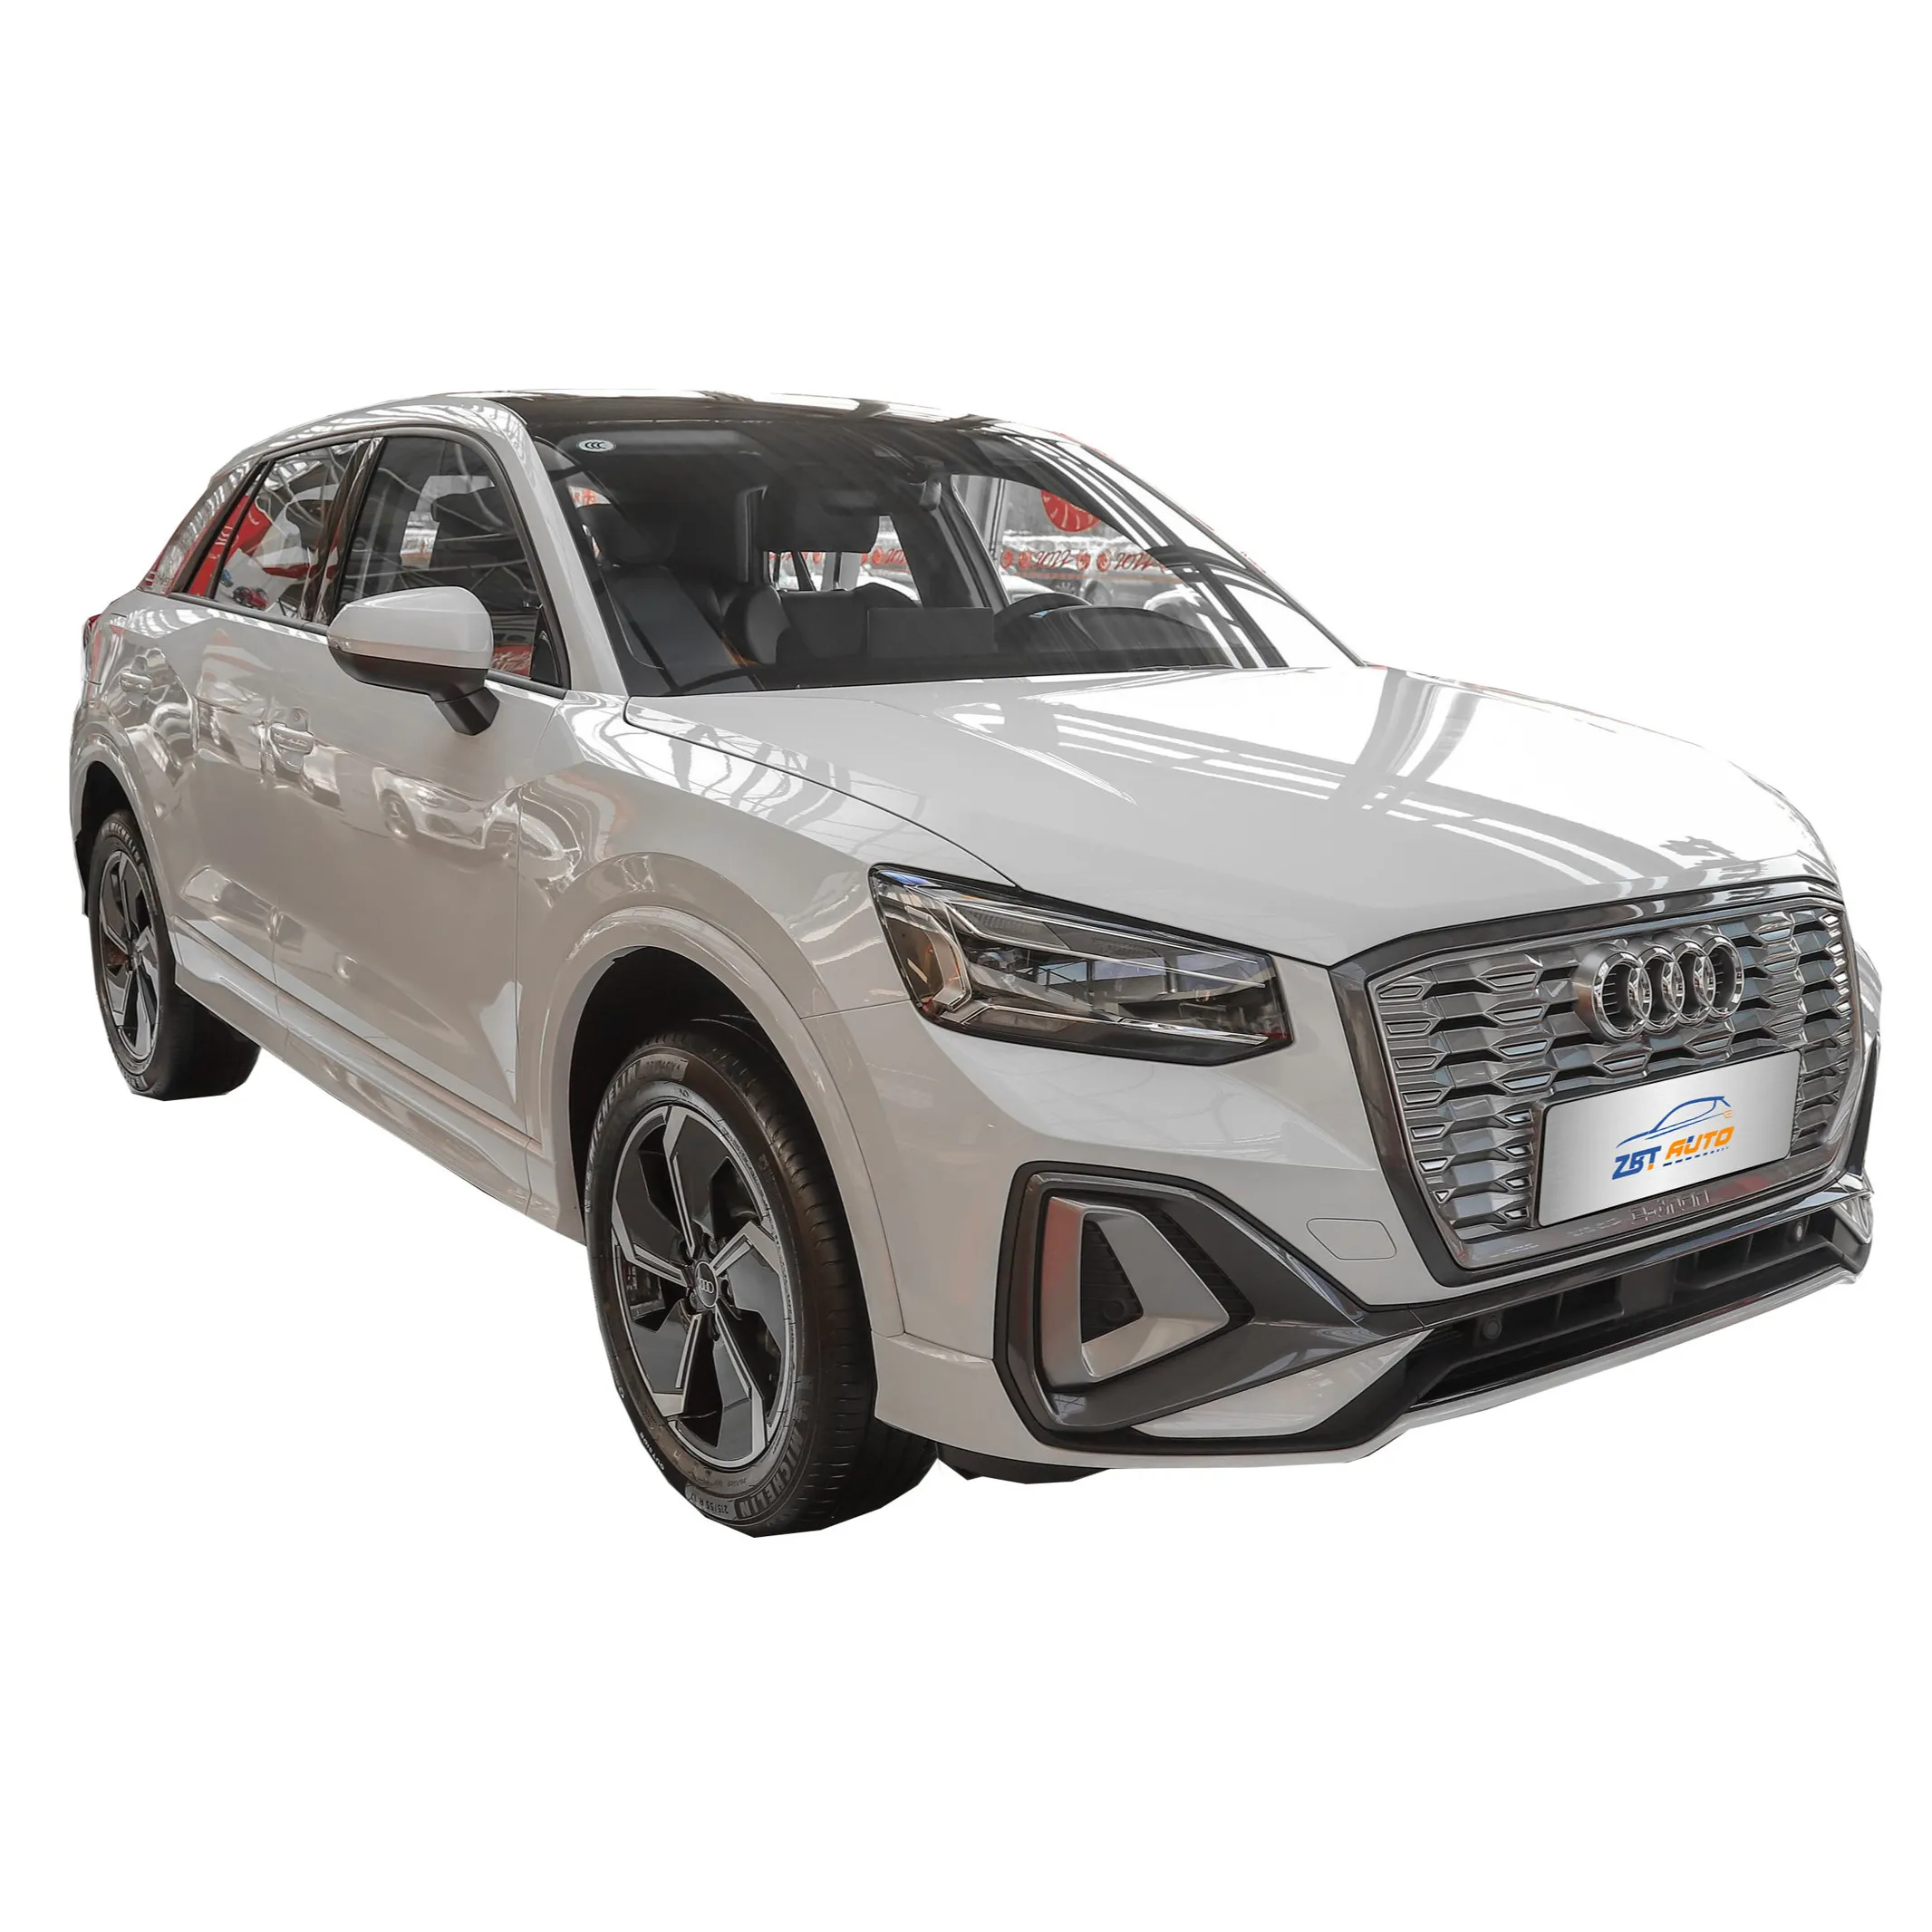 Thiết Kế Mới 2022 Năng Lượng Mới Pin Sạc Nhanh EV Tự Động Audi Q2L E Tron Xe Điện Dành Cho Người Lớn Năng Lượng Mới Xe